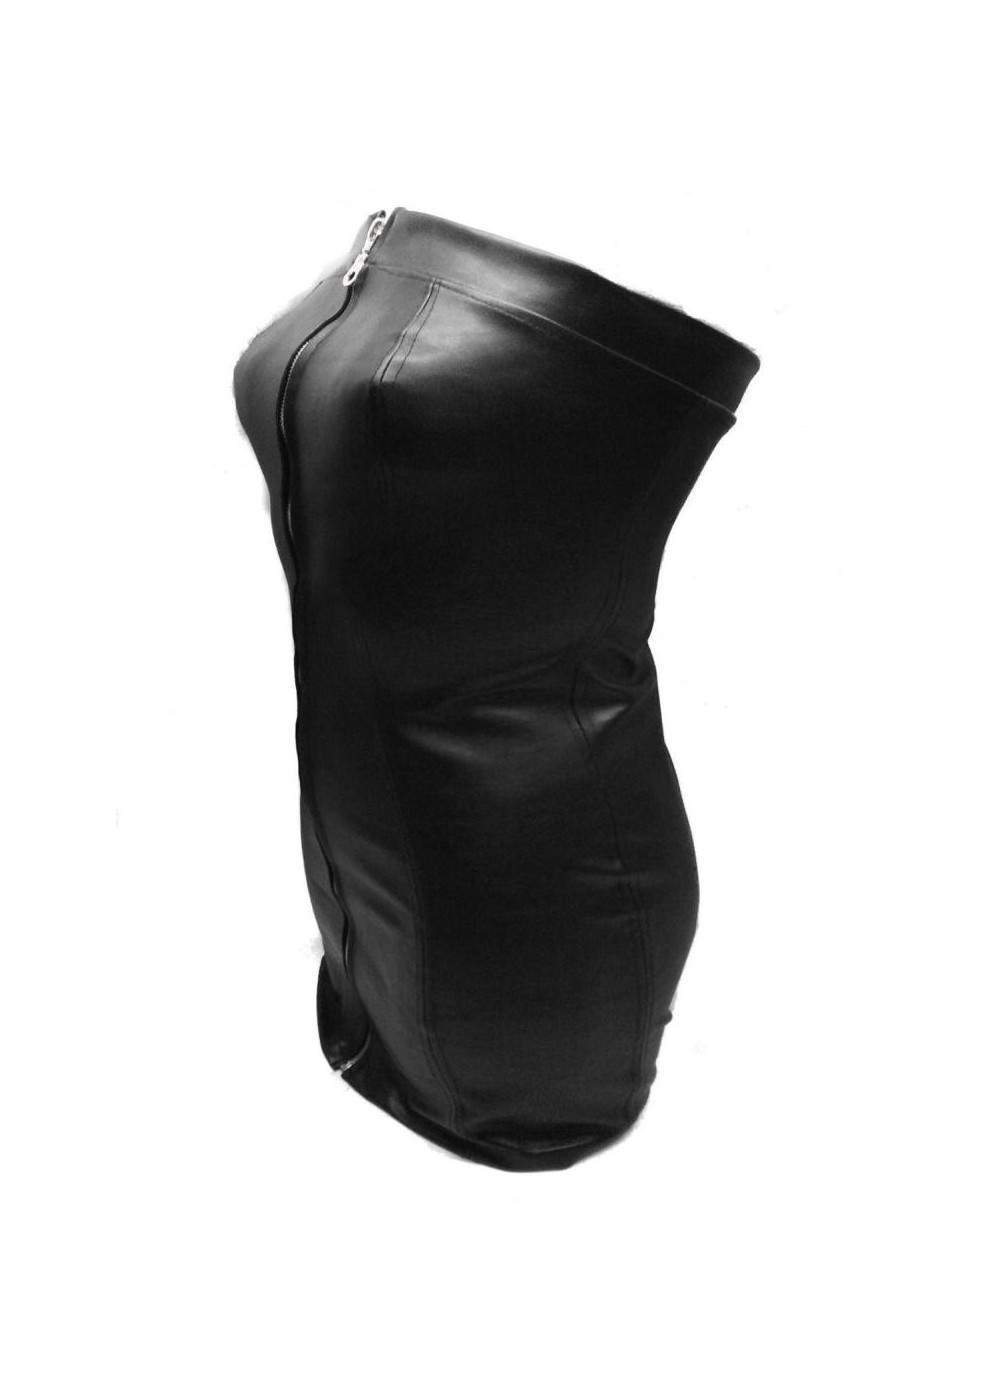 Designer Leder Kleid schwarz Größe L - XXL (44 - 52) Rabatt 11% - 